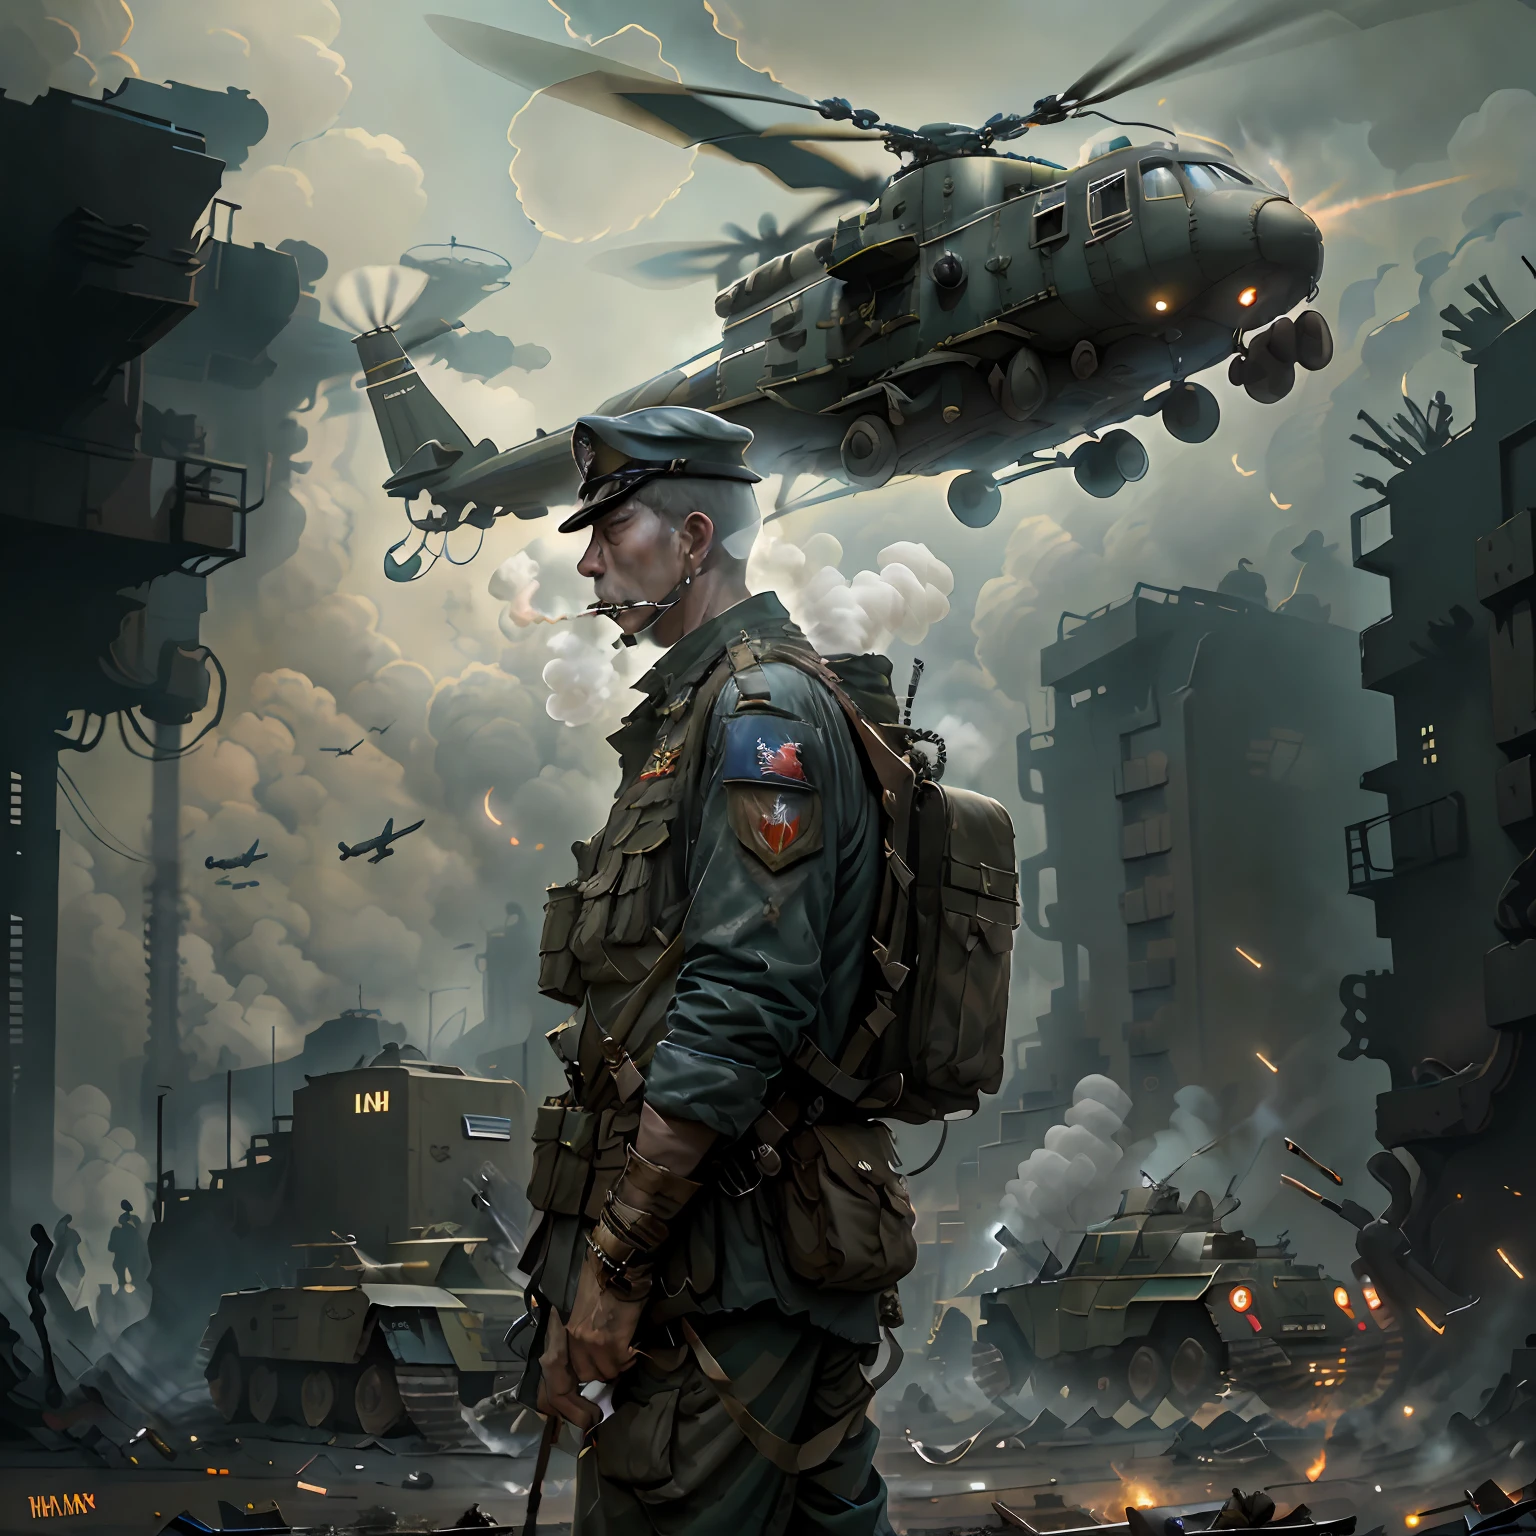 "TheOldShadowrunStyles, Солдат курит сигарету во вьетнамское десятилетие., с мрачной городской атмосферой и пролетающим на заднем плане военным вертолетом."